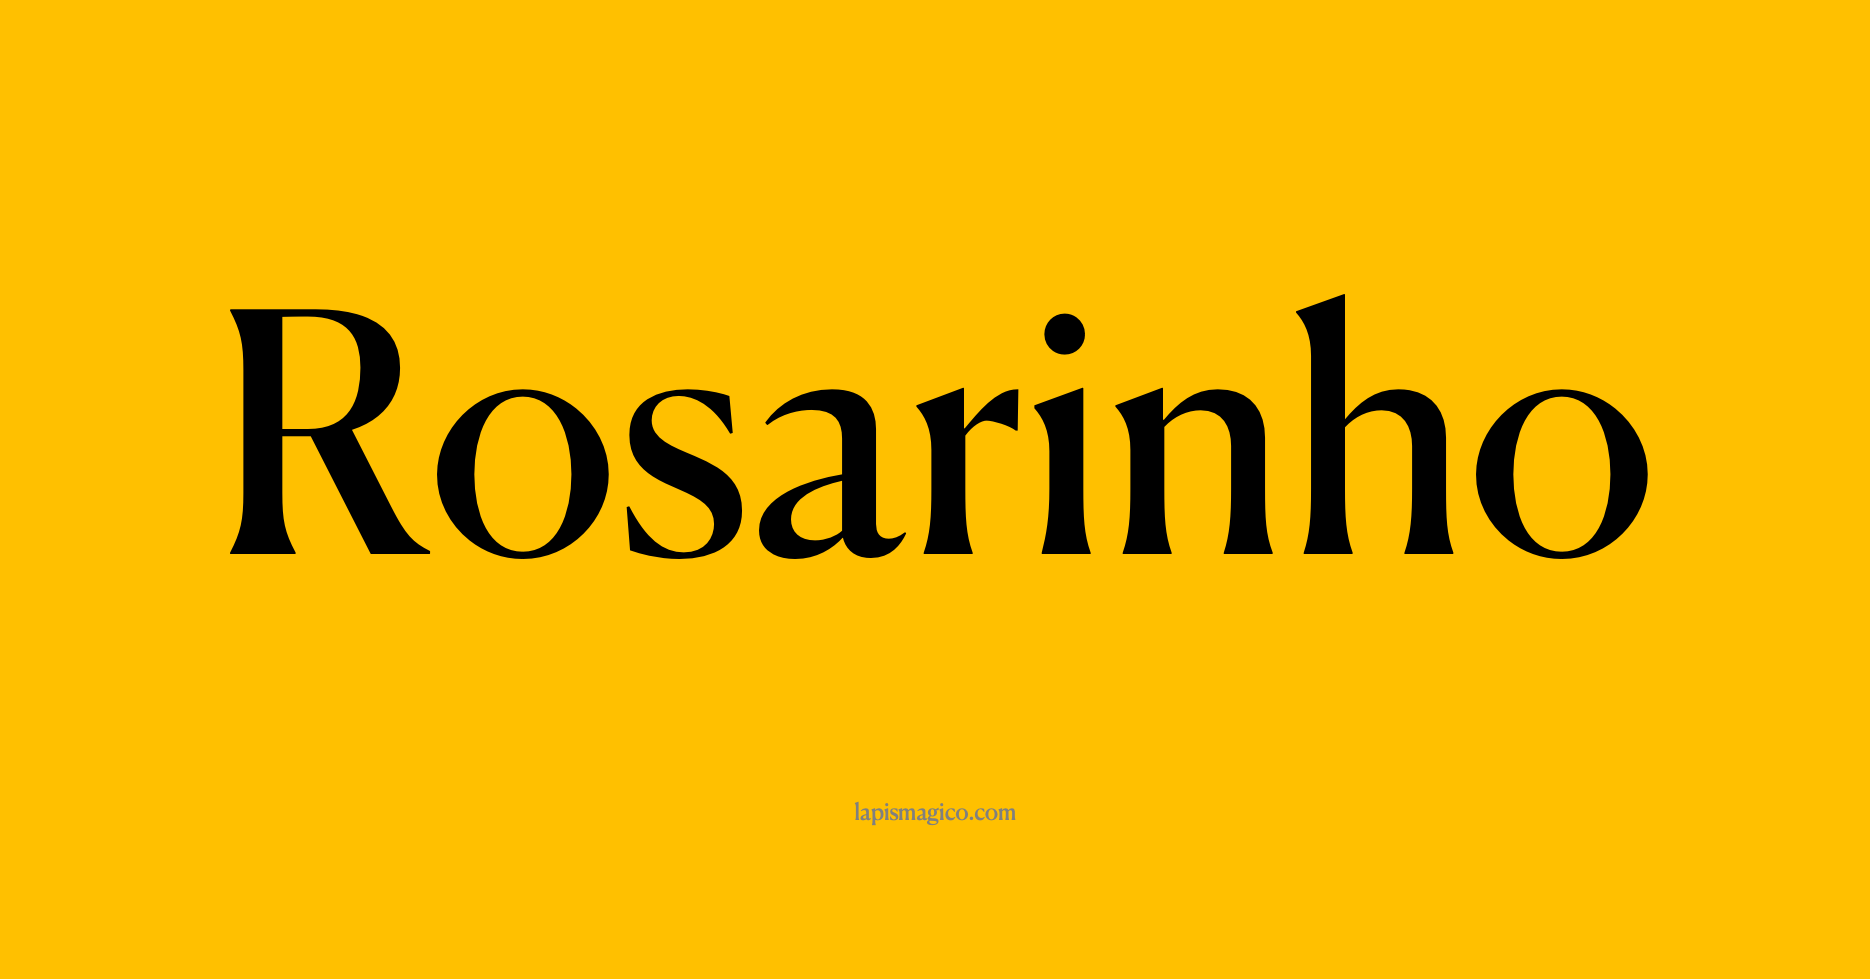 Nome Rosarinho, ficha divertida com pontilhado para crianças